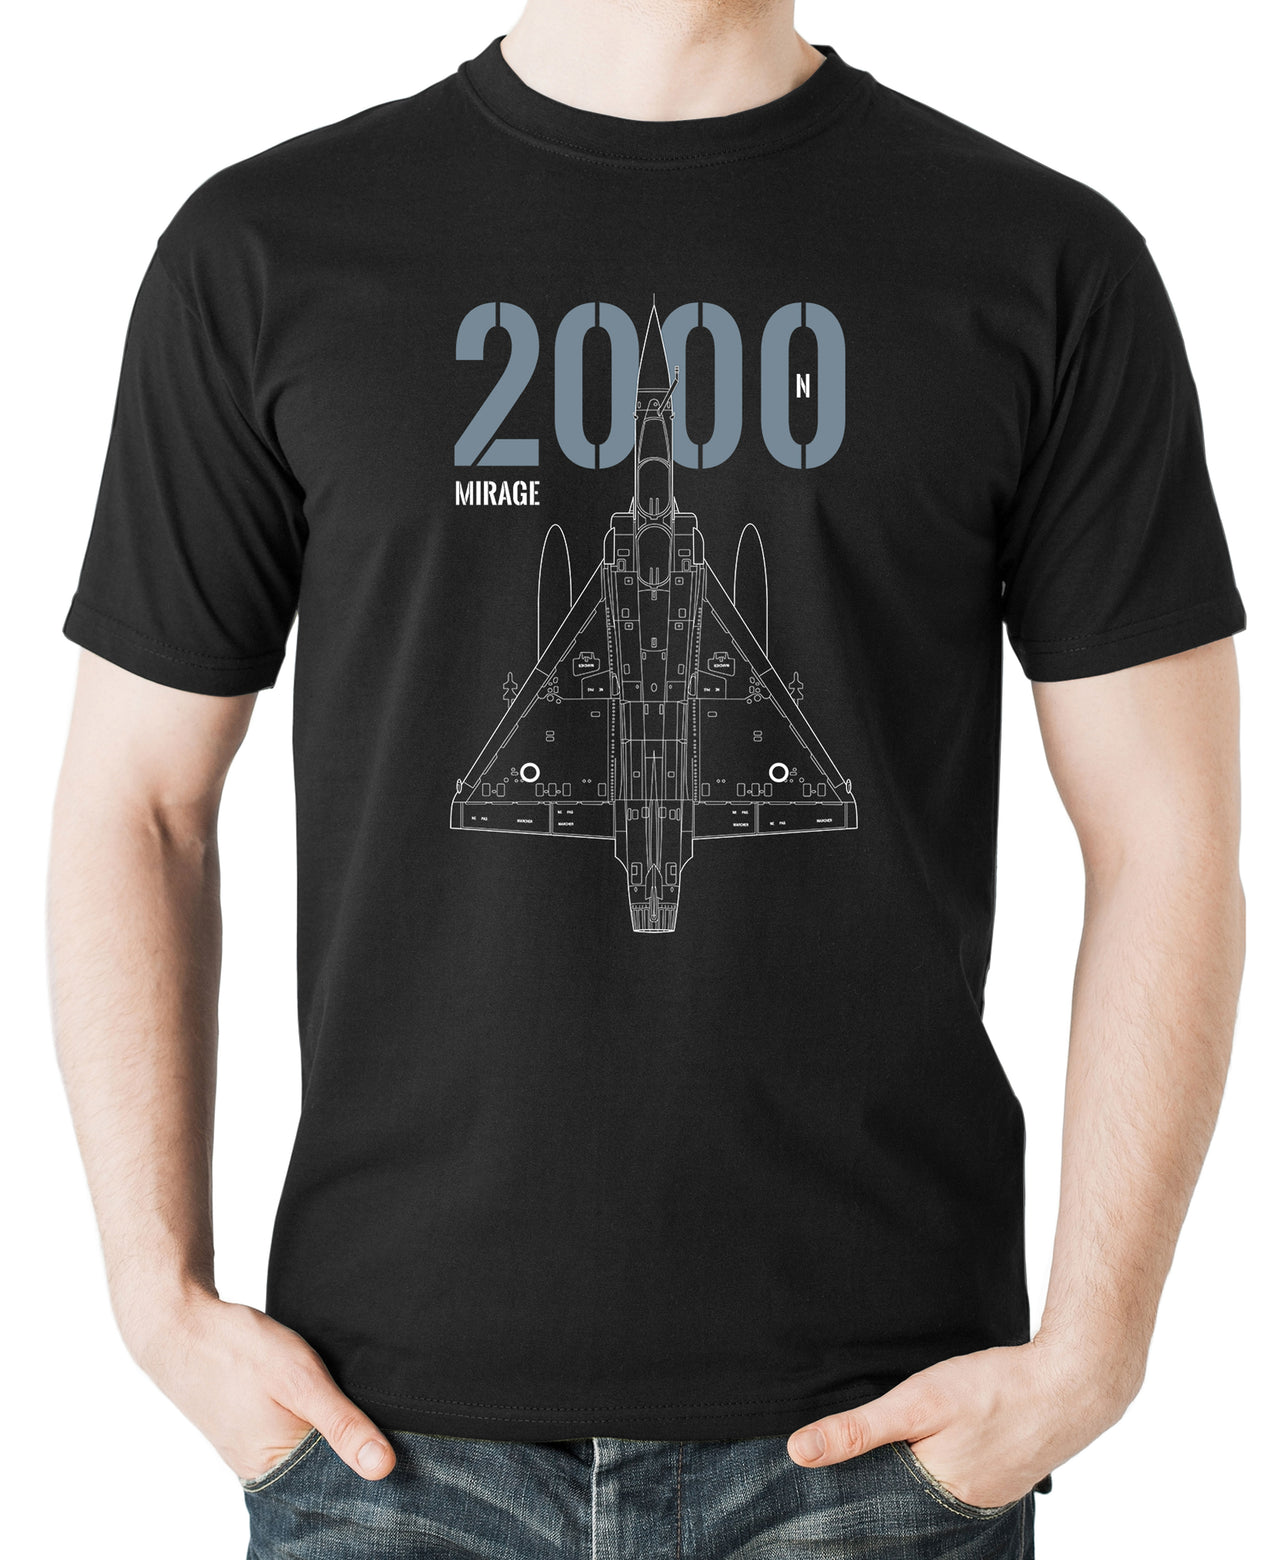 Mirage 2000N - T-shirt